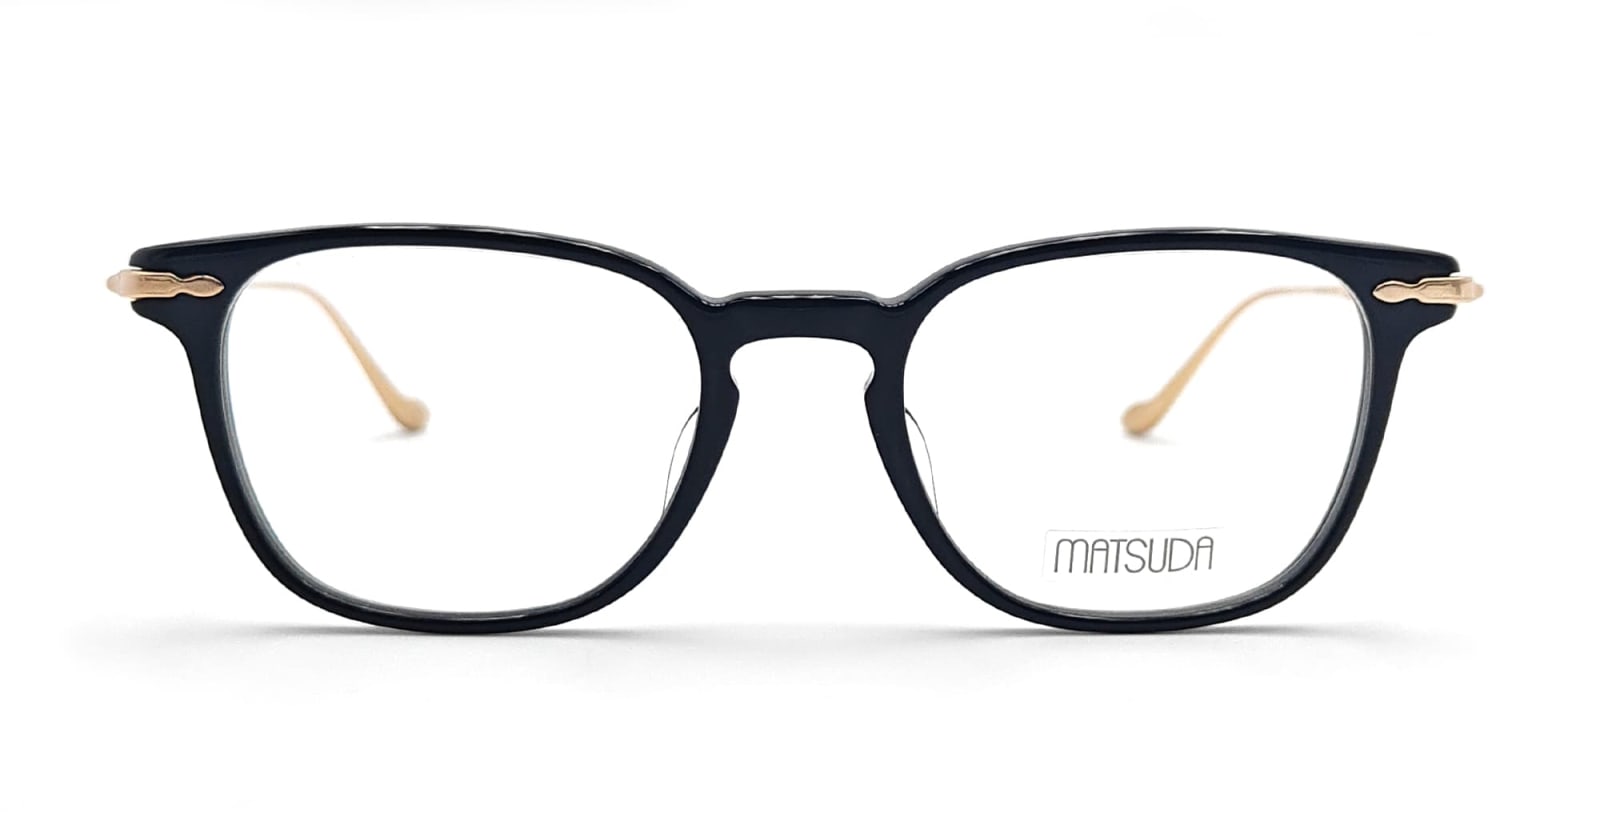 M2052 - Black / Brushed Gold Rx Glasses